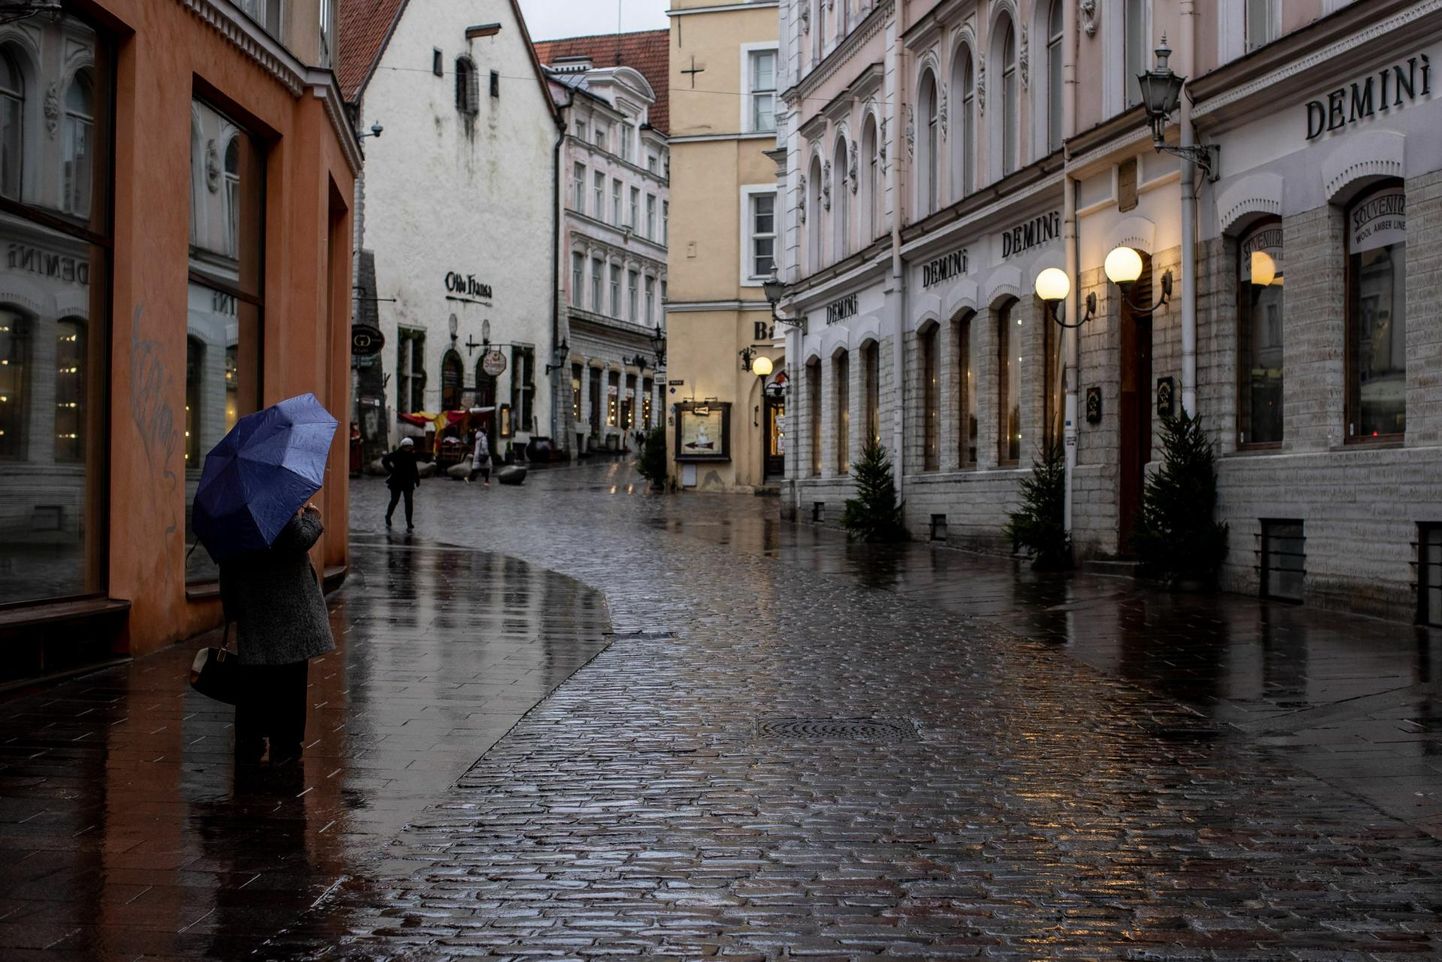 Koroonapiirangute ajal oli Tallinna vanalinn üsna inimtühi isegi jõulueelsetel nädalatel, mil sealsetel tänavatel valitseb tavaliselt melu.